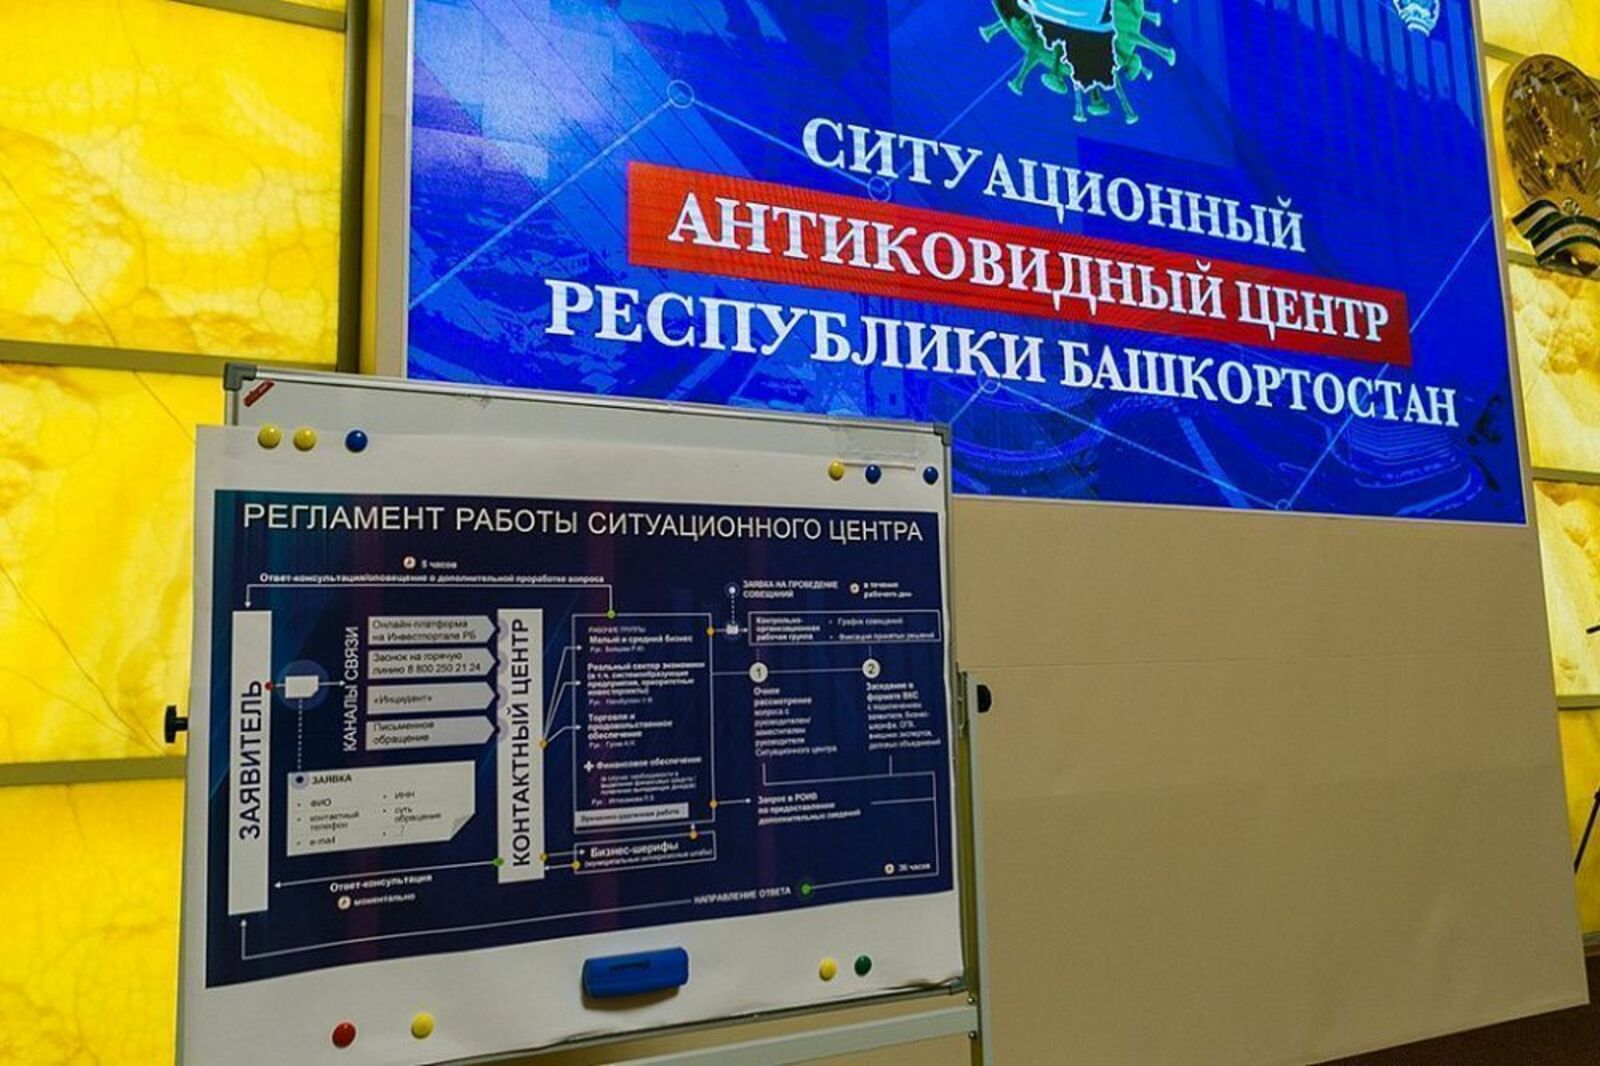 Сегодня, 26 июля, вступили в силу антиковидные ограничения по Республике Башкортостан